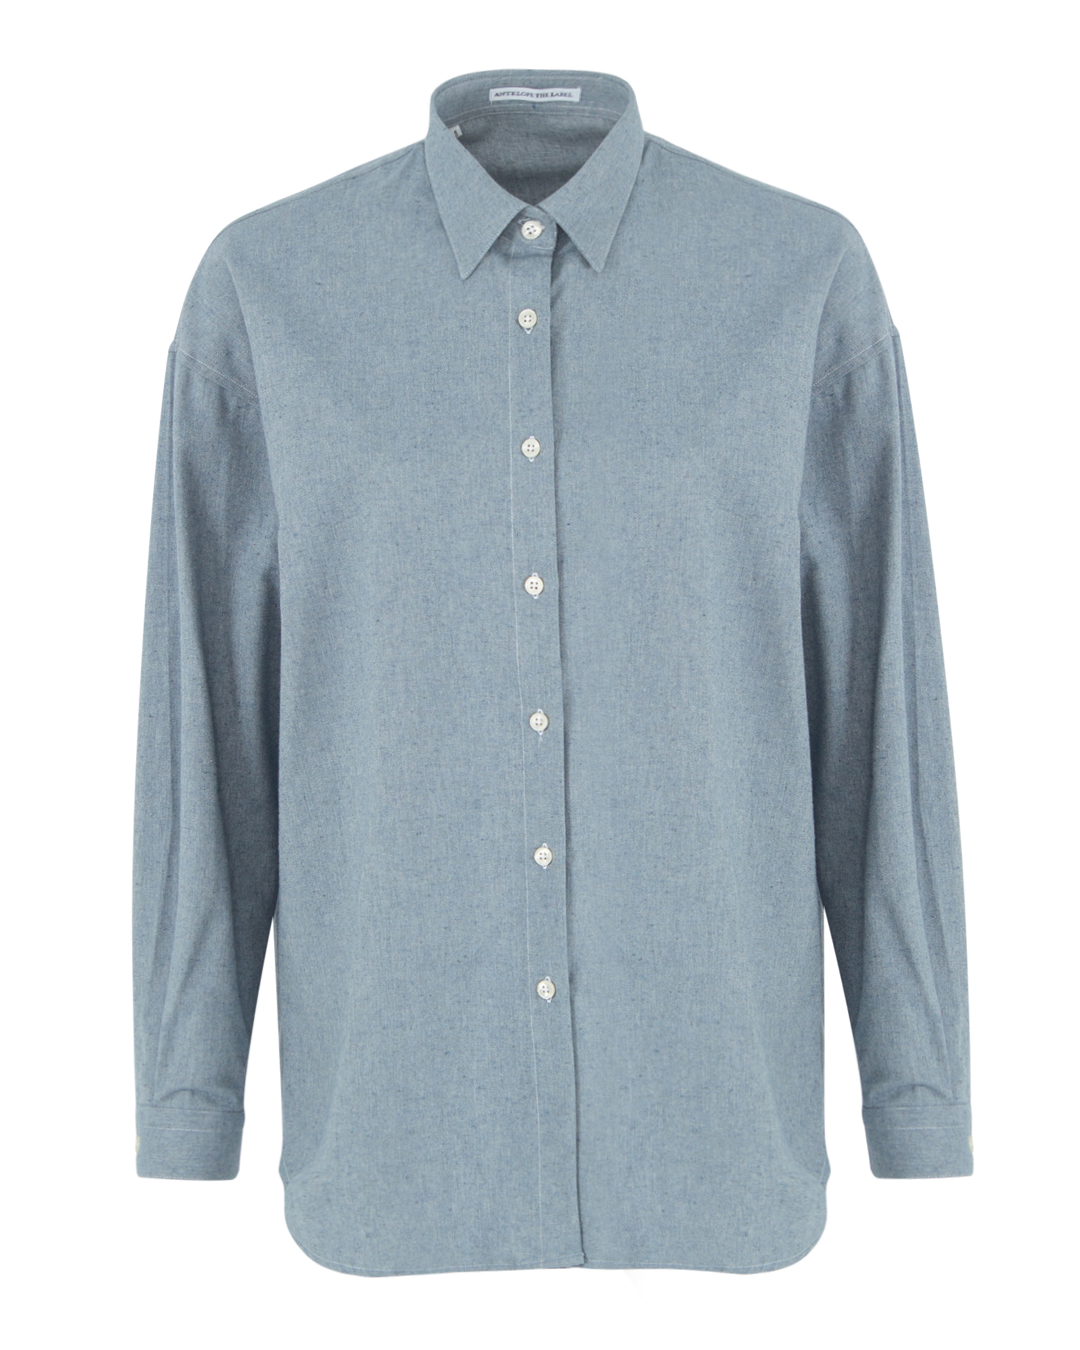 хлопковая рубашка ANTELOPE THE LABEL A2.823 синий l, размер l - фото 1